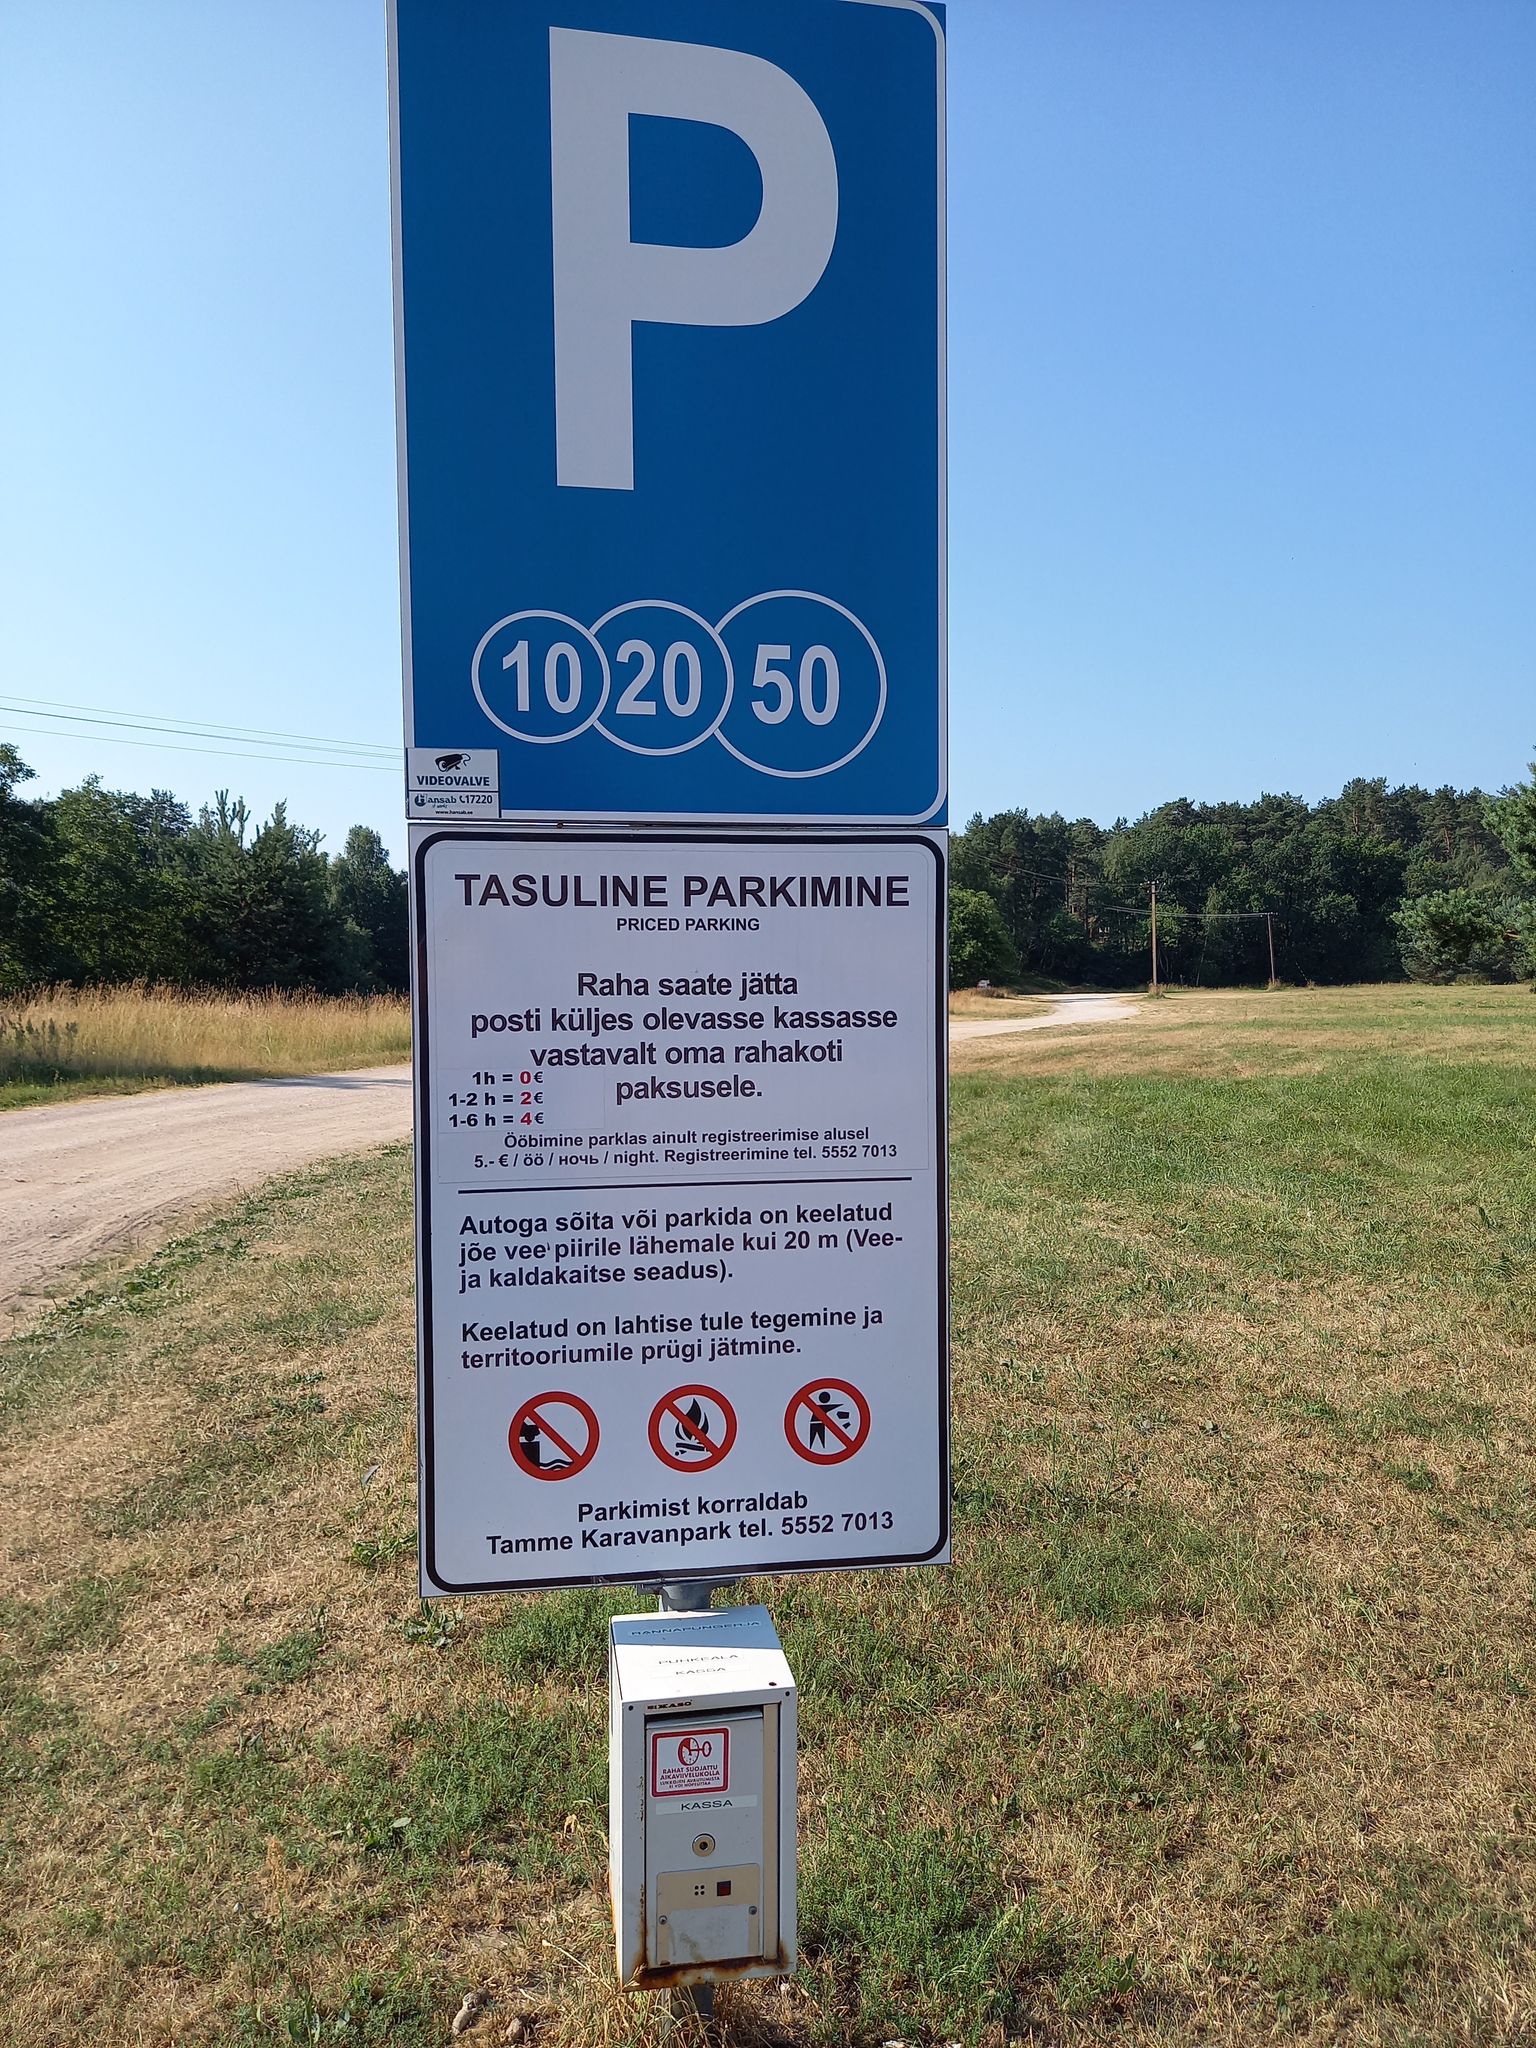 Такой знак парковки приветствует прибывших на берег реки Раннапунгерья, причем выясняется, что оплатить парковку клиент может соответственно своему карману.